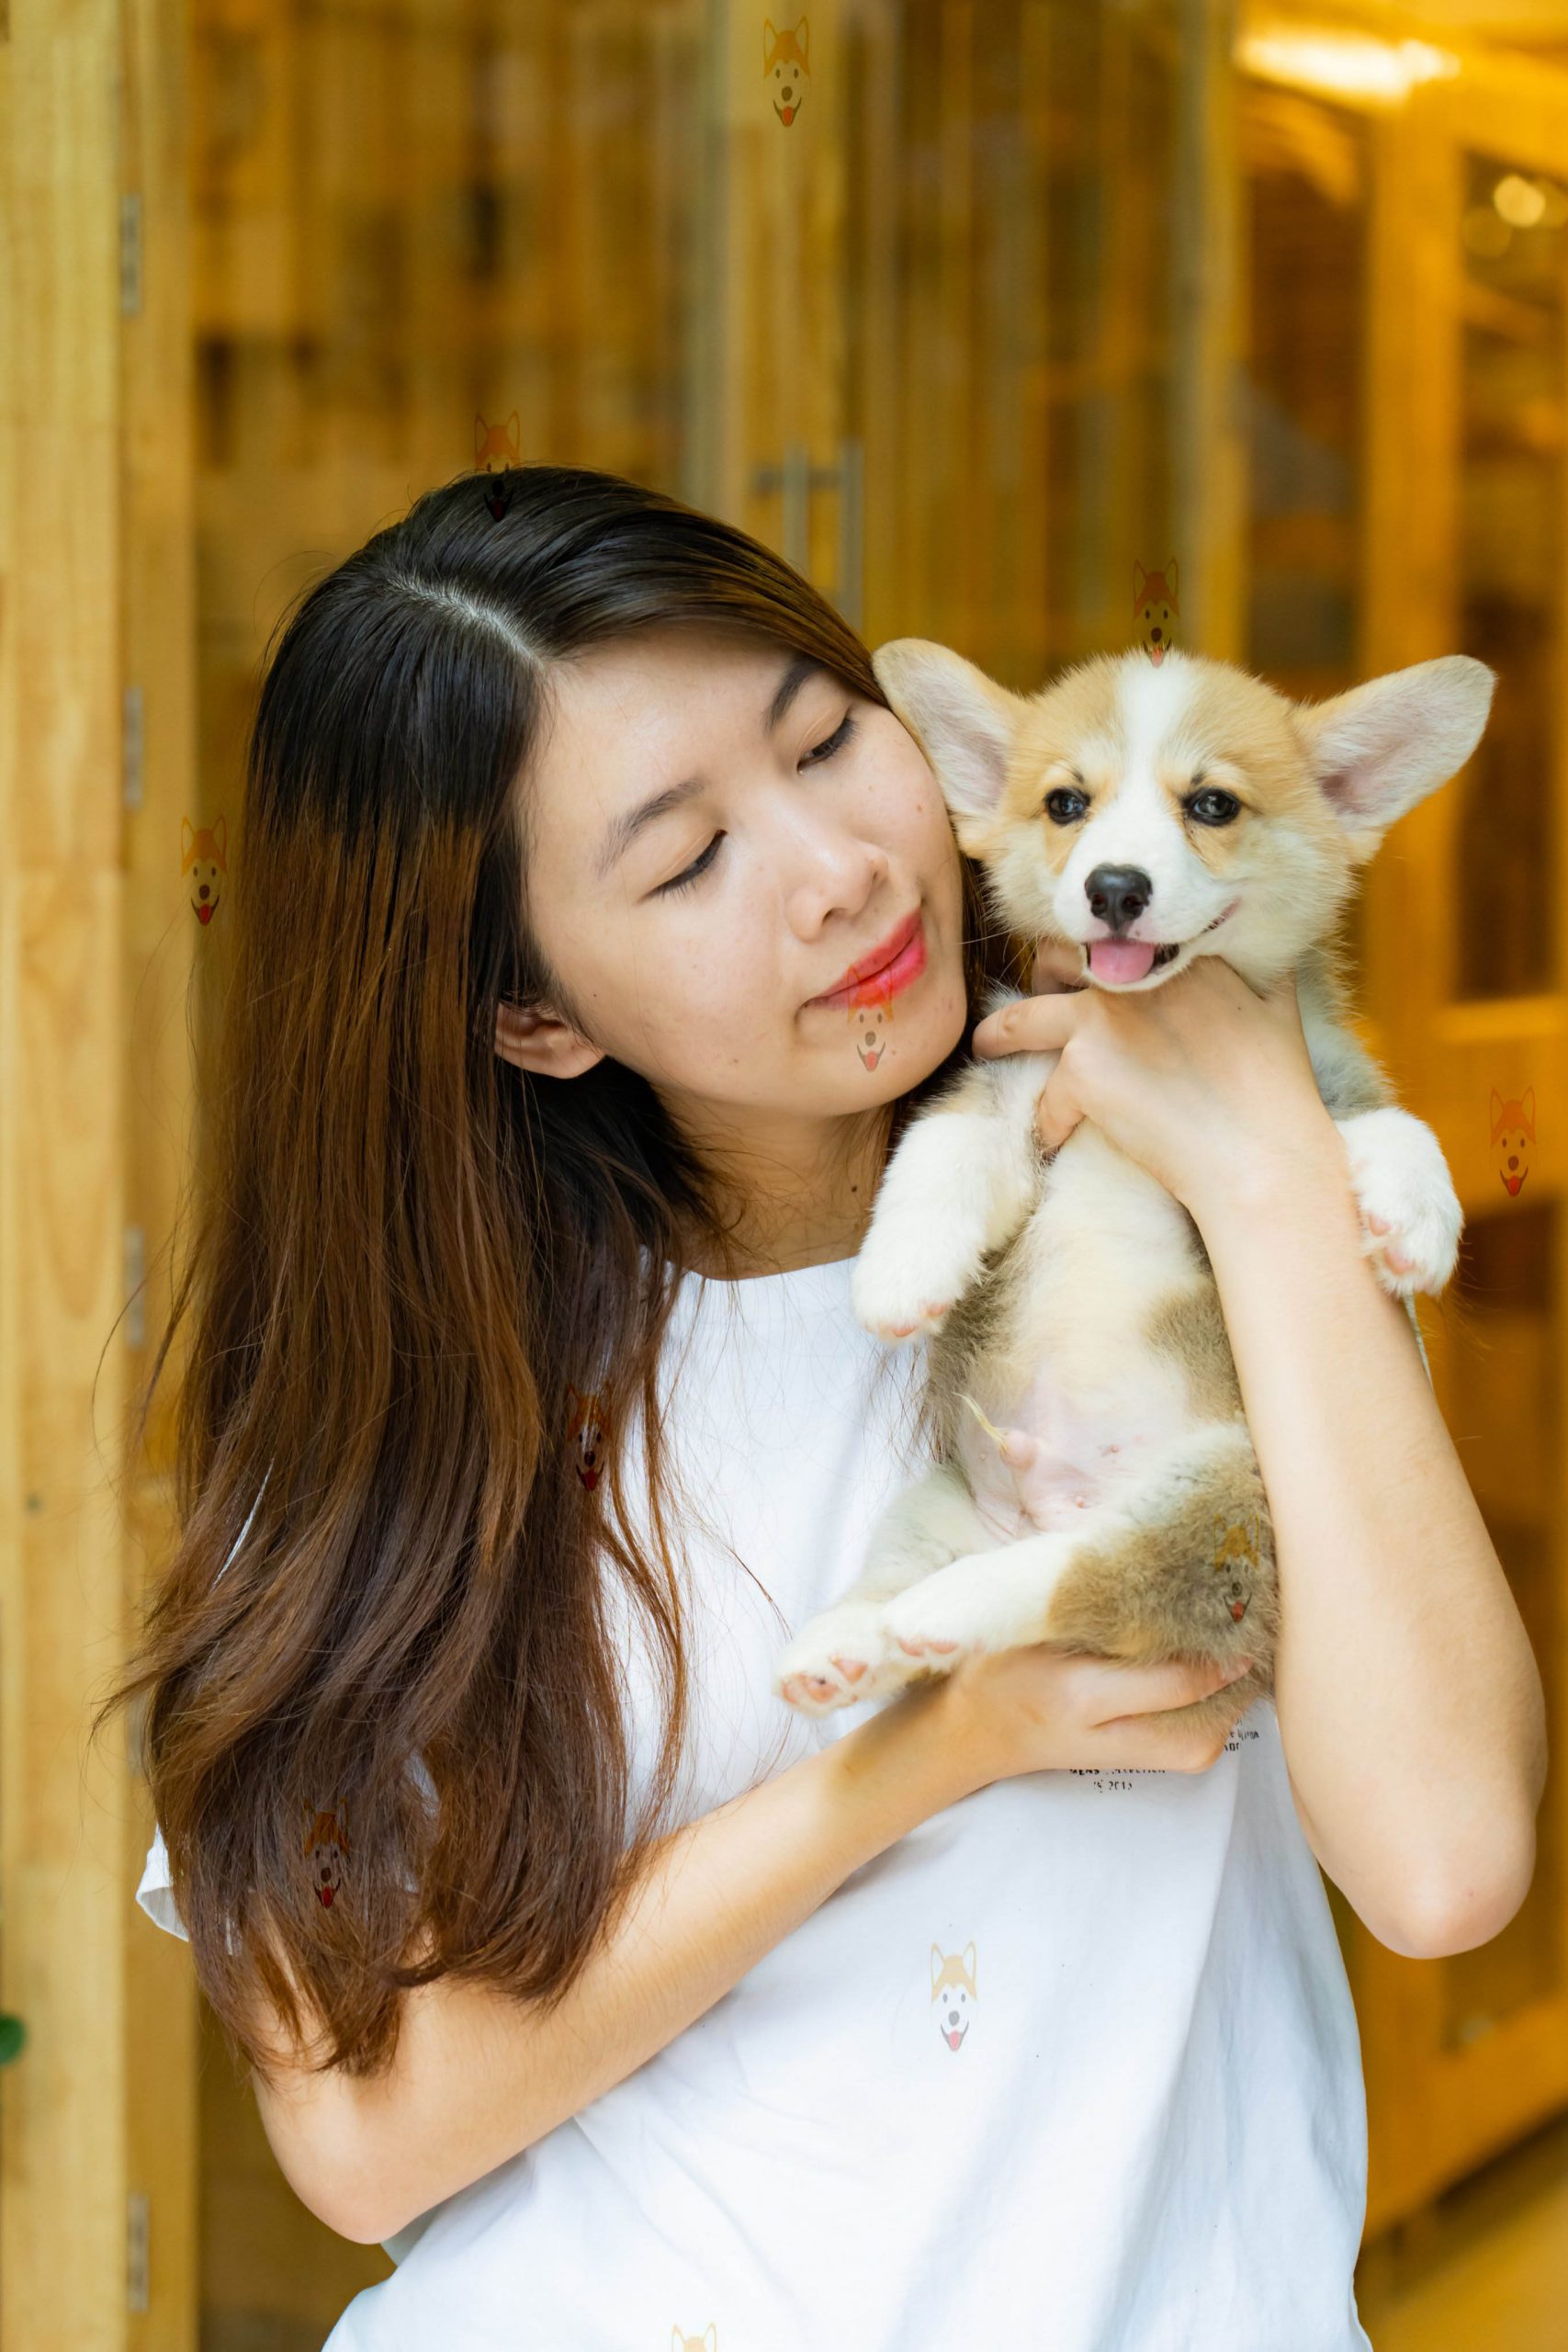 Chó Corgi Pembroke & Cardigan – Mua bán chó Corgi con tại Dogily Petshop Hà Nội, TpHCM